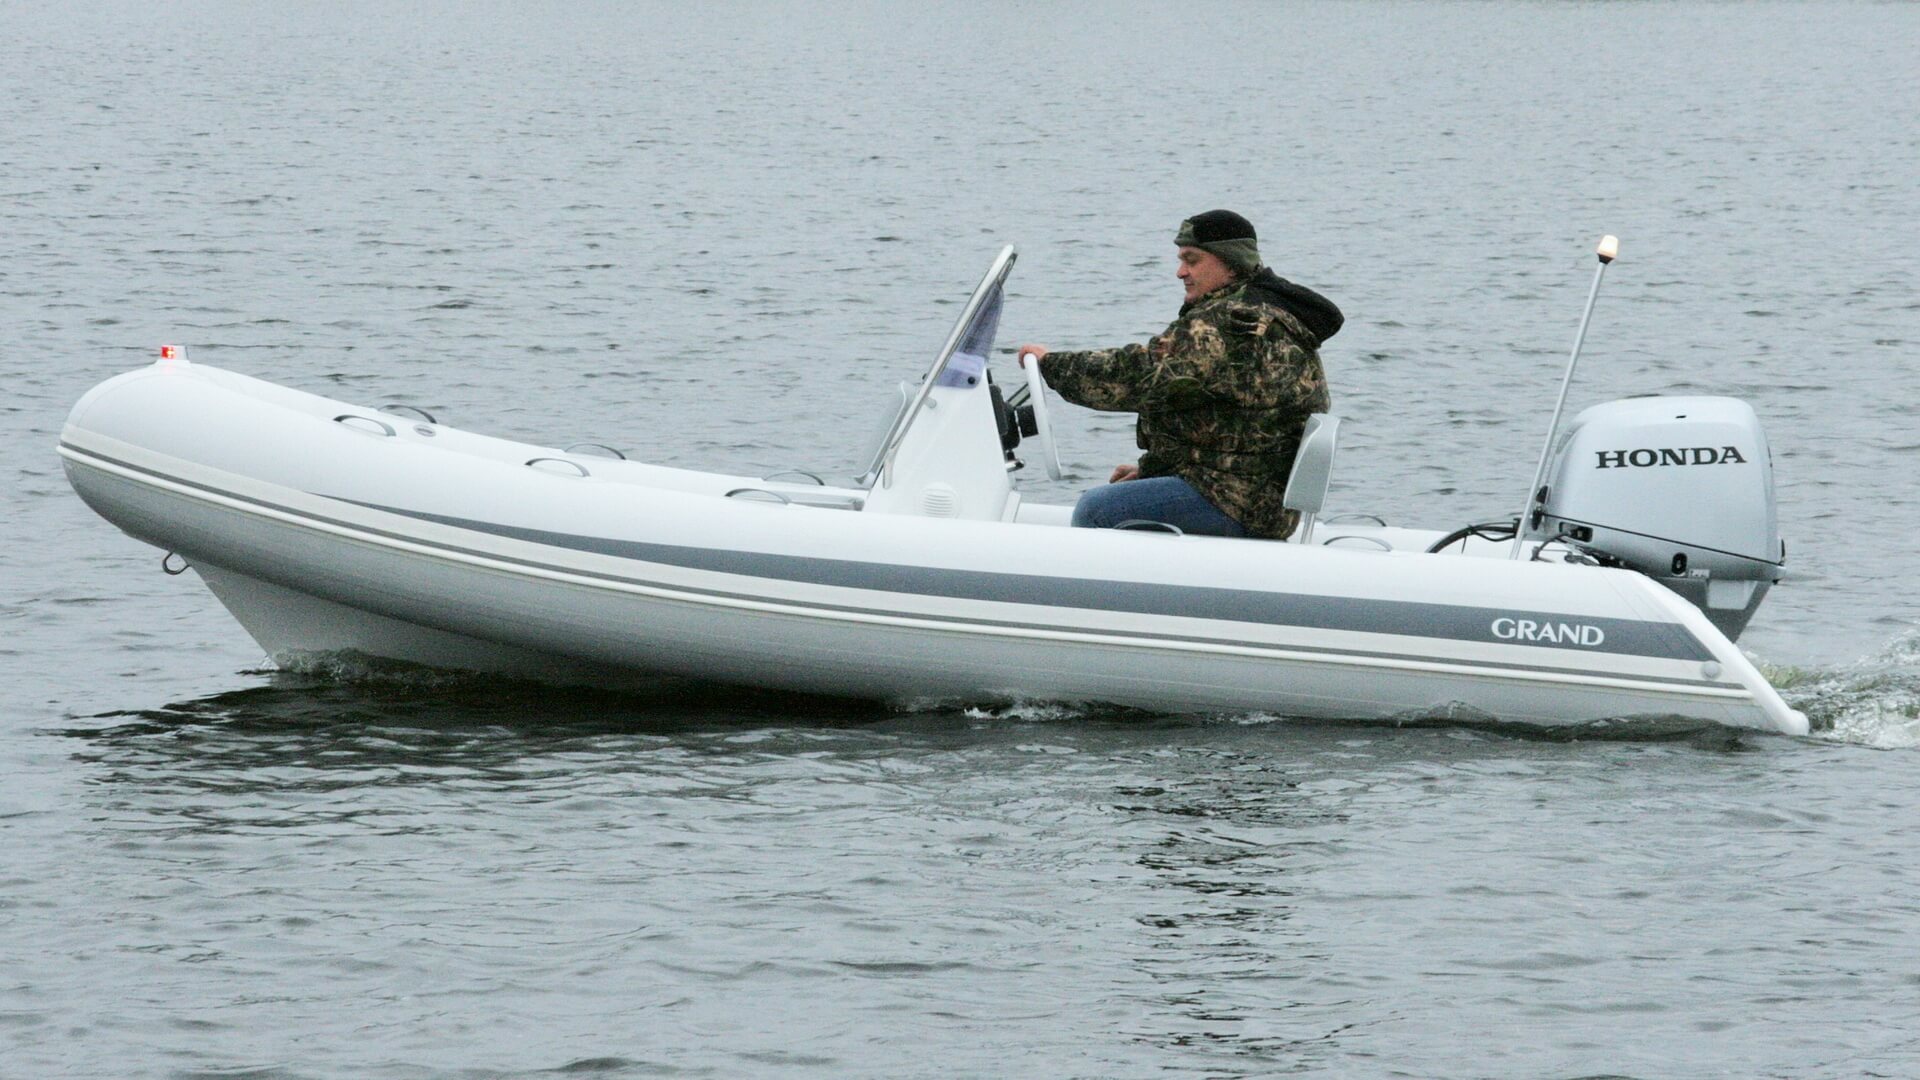 Надувная лодка с жестким дном GRAND Silver Line S470NL, Надувная лодка GRAND Silver Line S470NLF, GRAND Silver Line S470NL, GRAND Silver Line S470NLF, GRAND S470NL, GRAND S470NLF, GRAND S470, Надувная лодка GRAND, Надувная лодка ГРАНД, Надувная лодка с жестким дном, RIB, Rigid Inflatable Boats